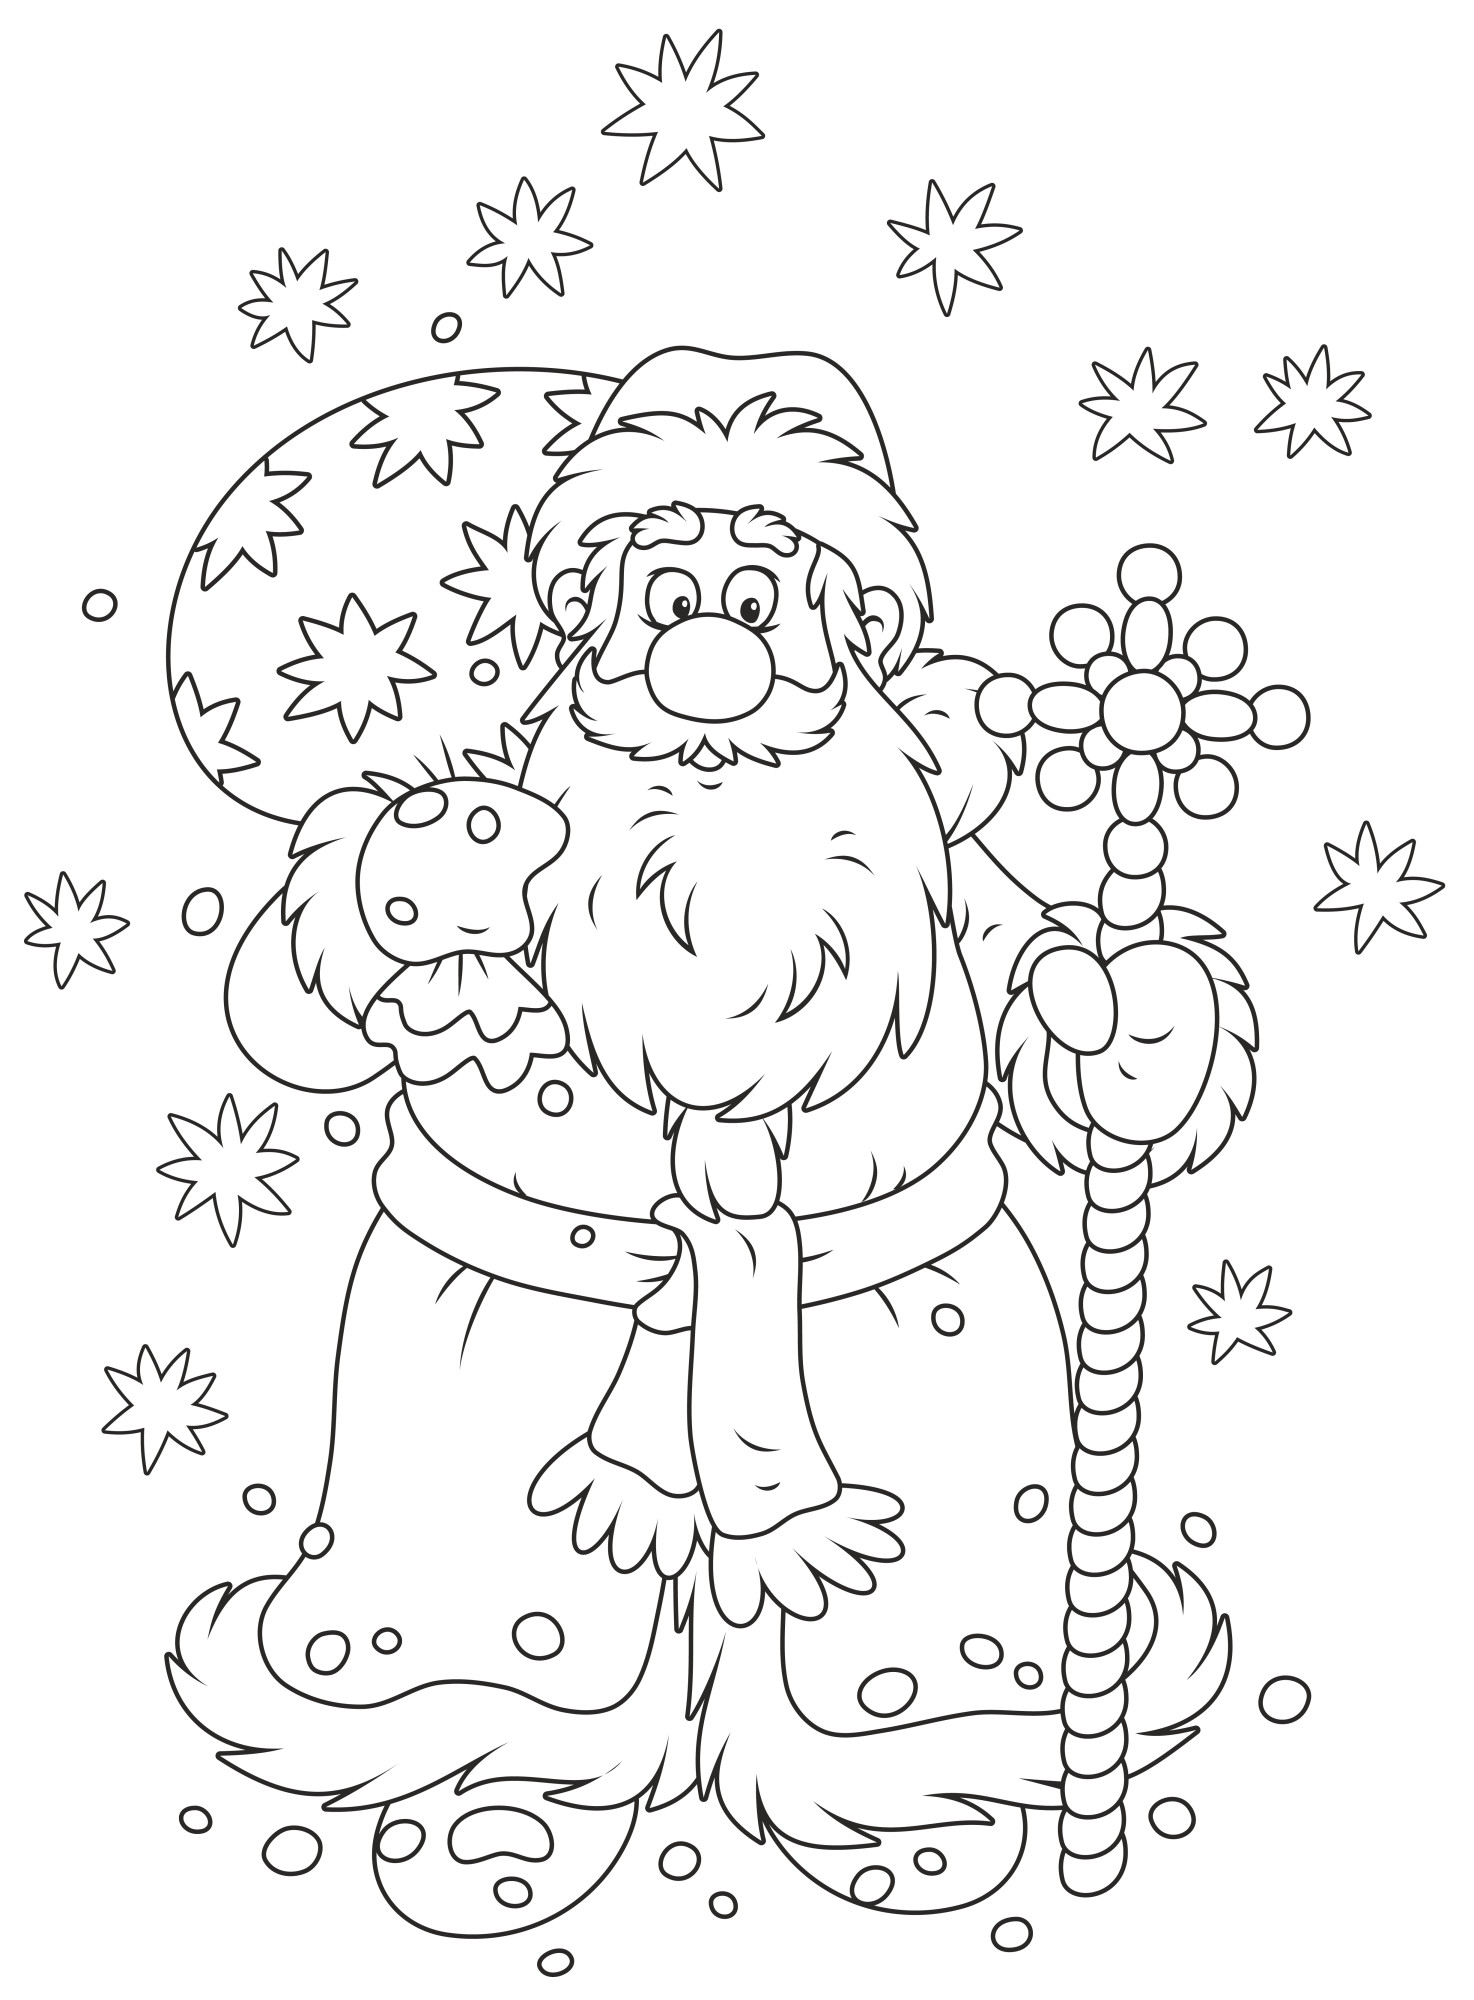 Раскраска для детей: дед мороз в варежках с мешком подарков и волшебным посохом